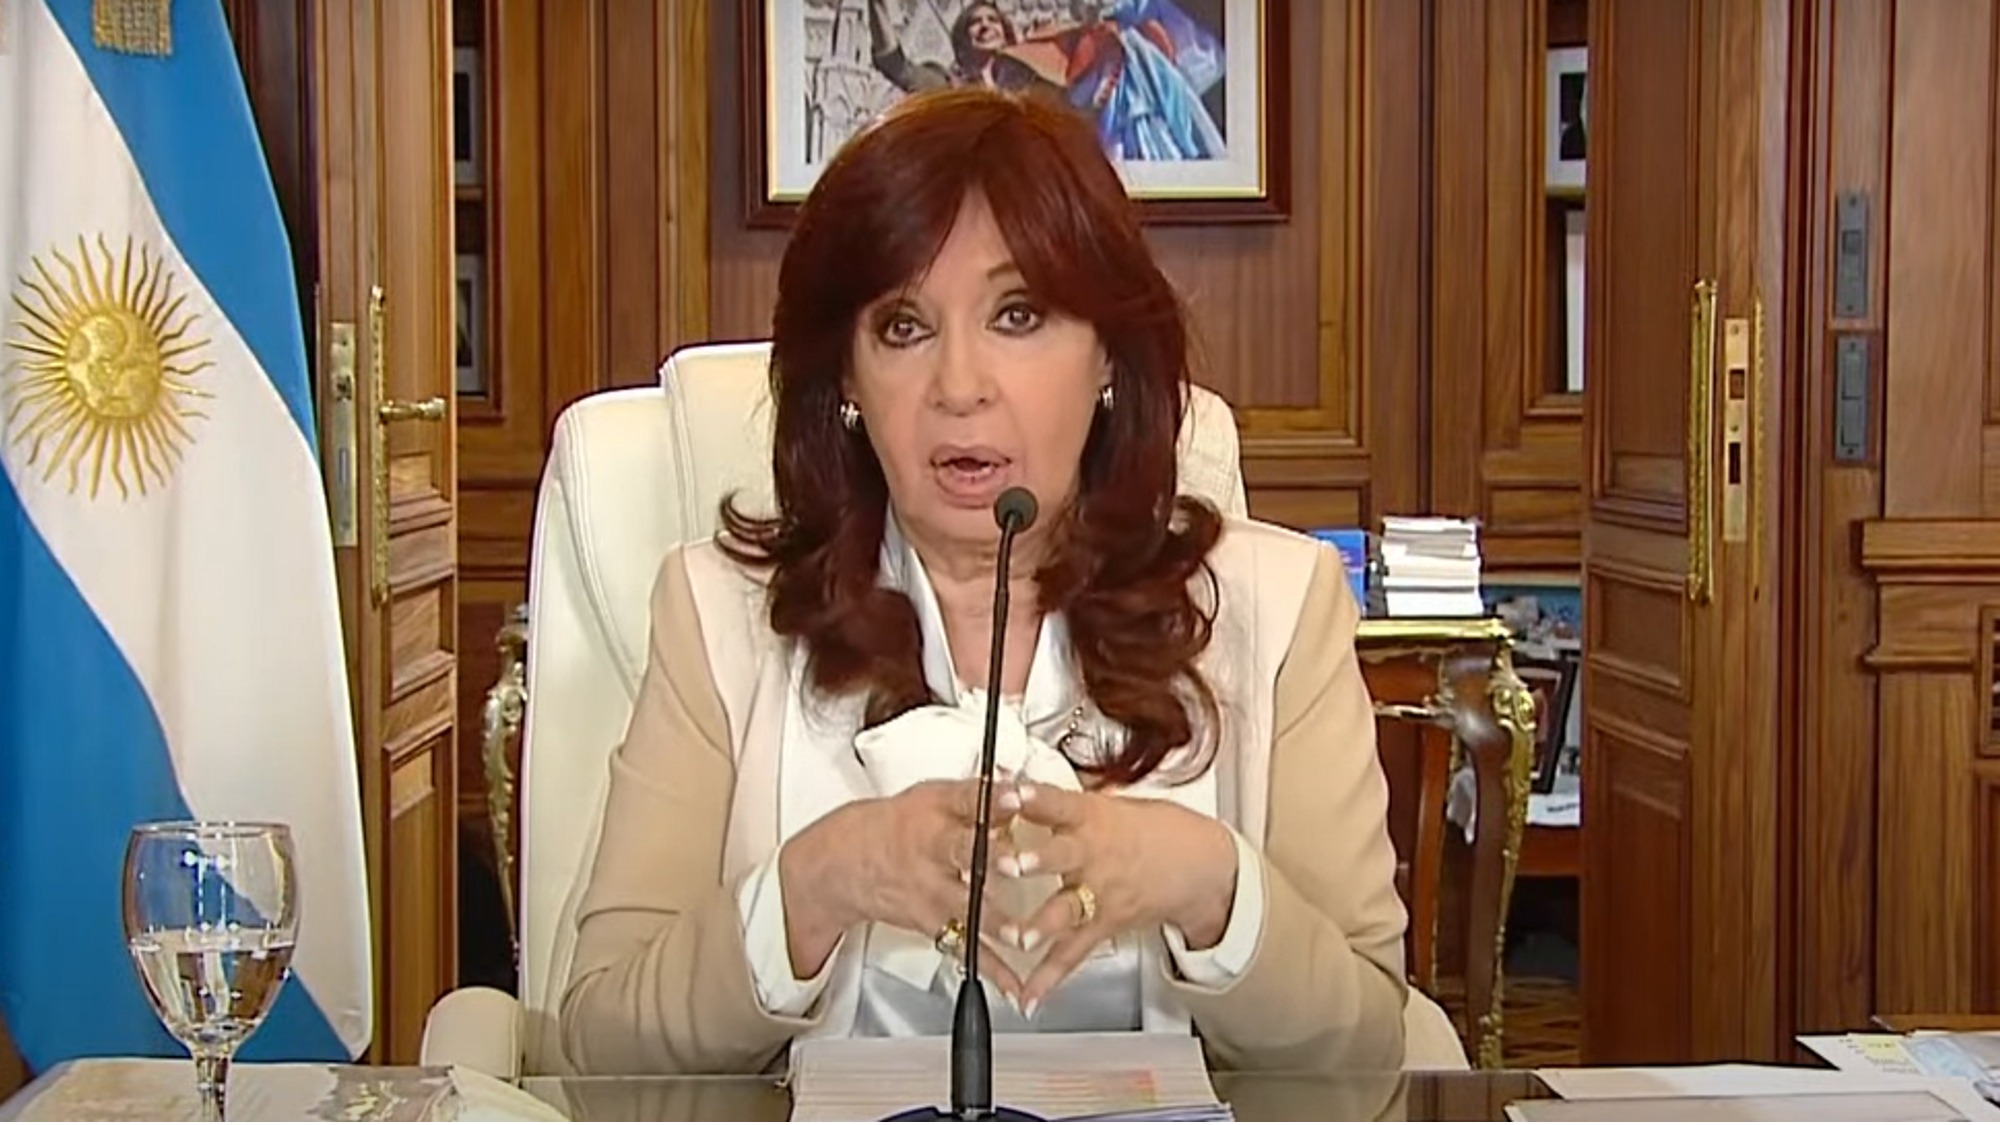 ANÁLISIS | El intento de asesinato contra Cristina Fernández de Kirchner es  el ataque más grave contra una figura política en Argentina desde 1991